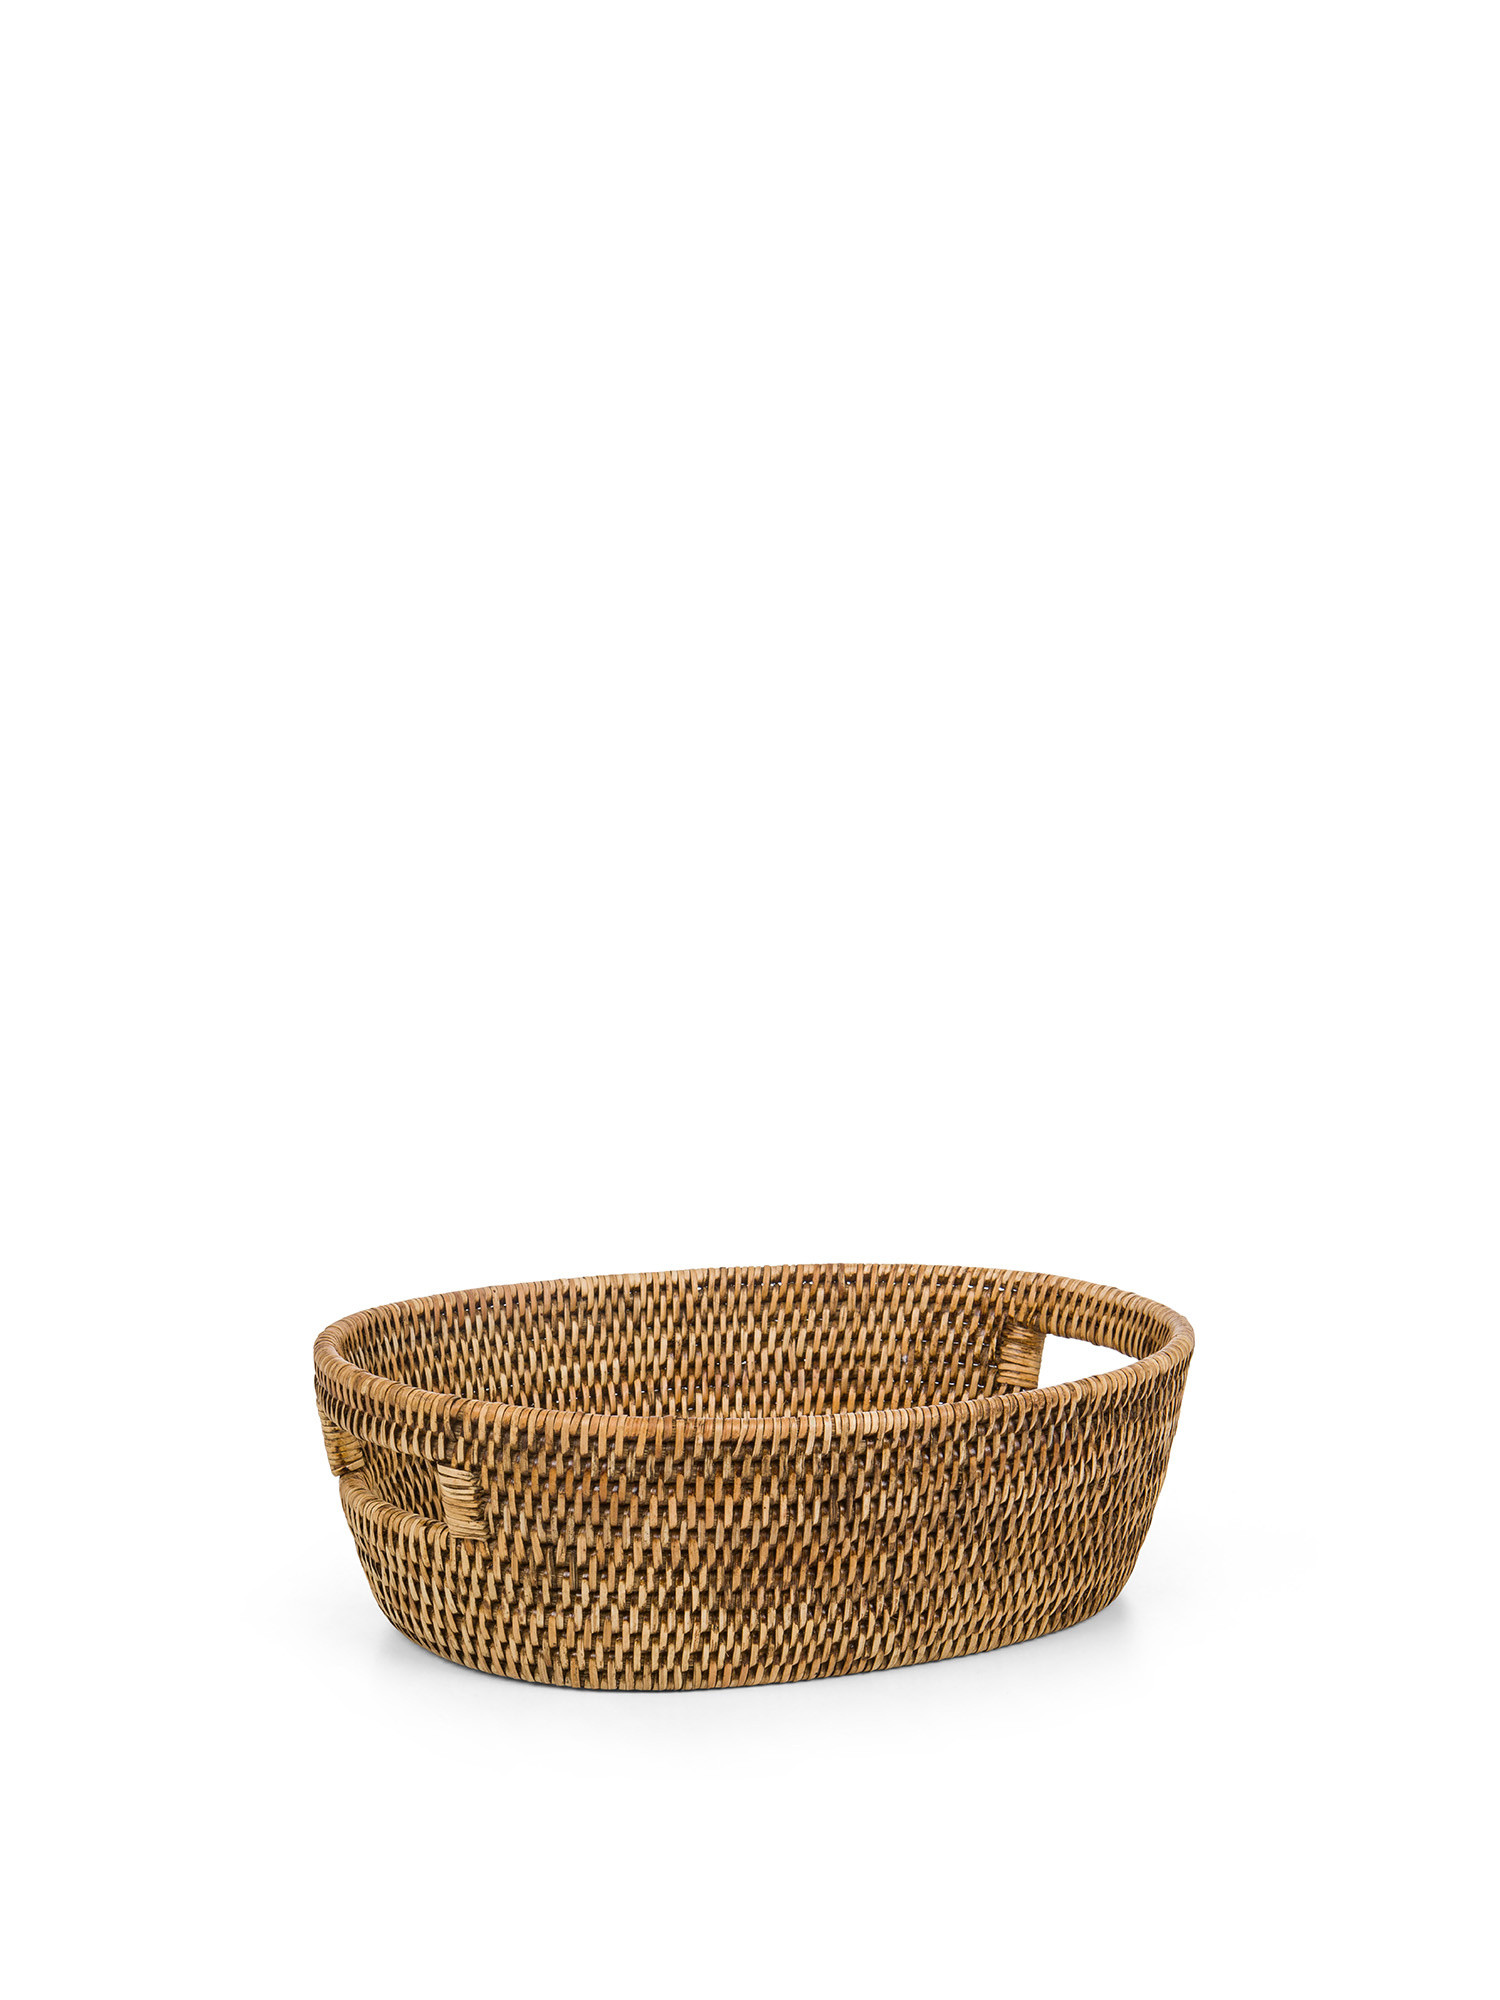 Rattan basket, Light Brown, large image number 0